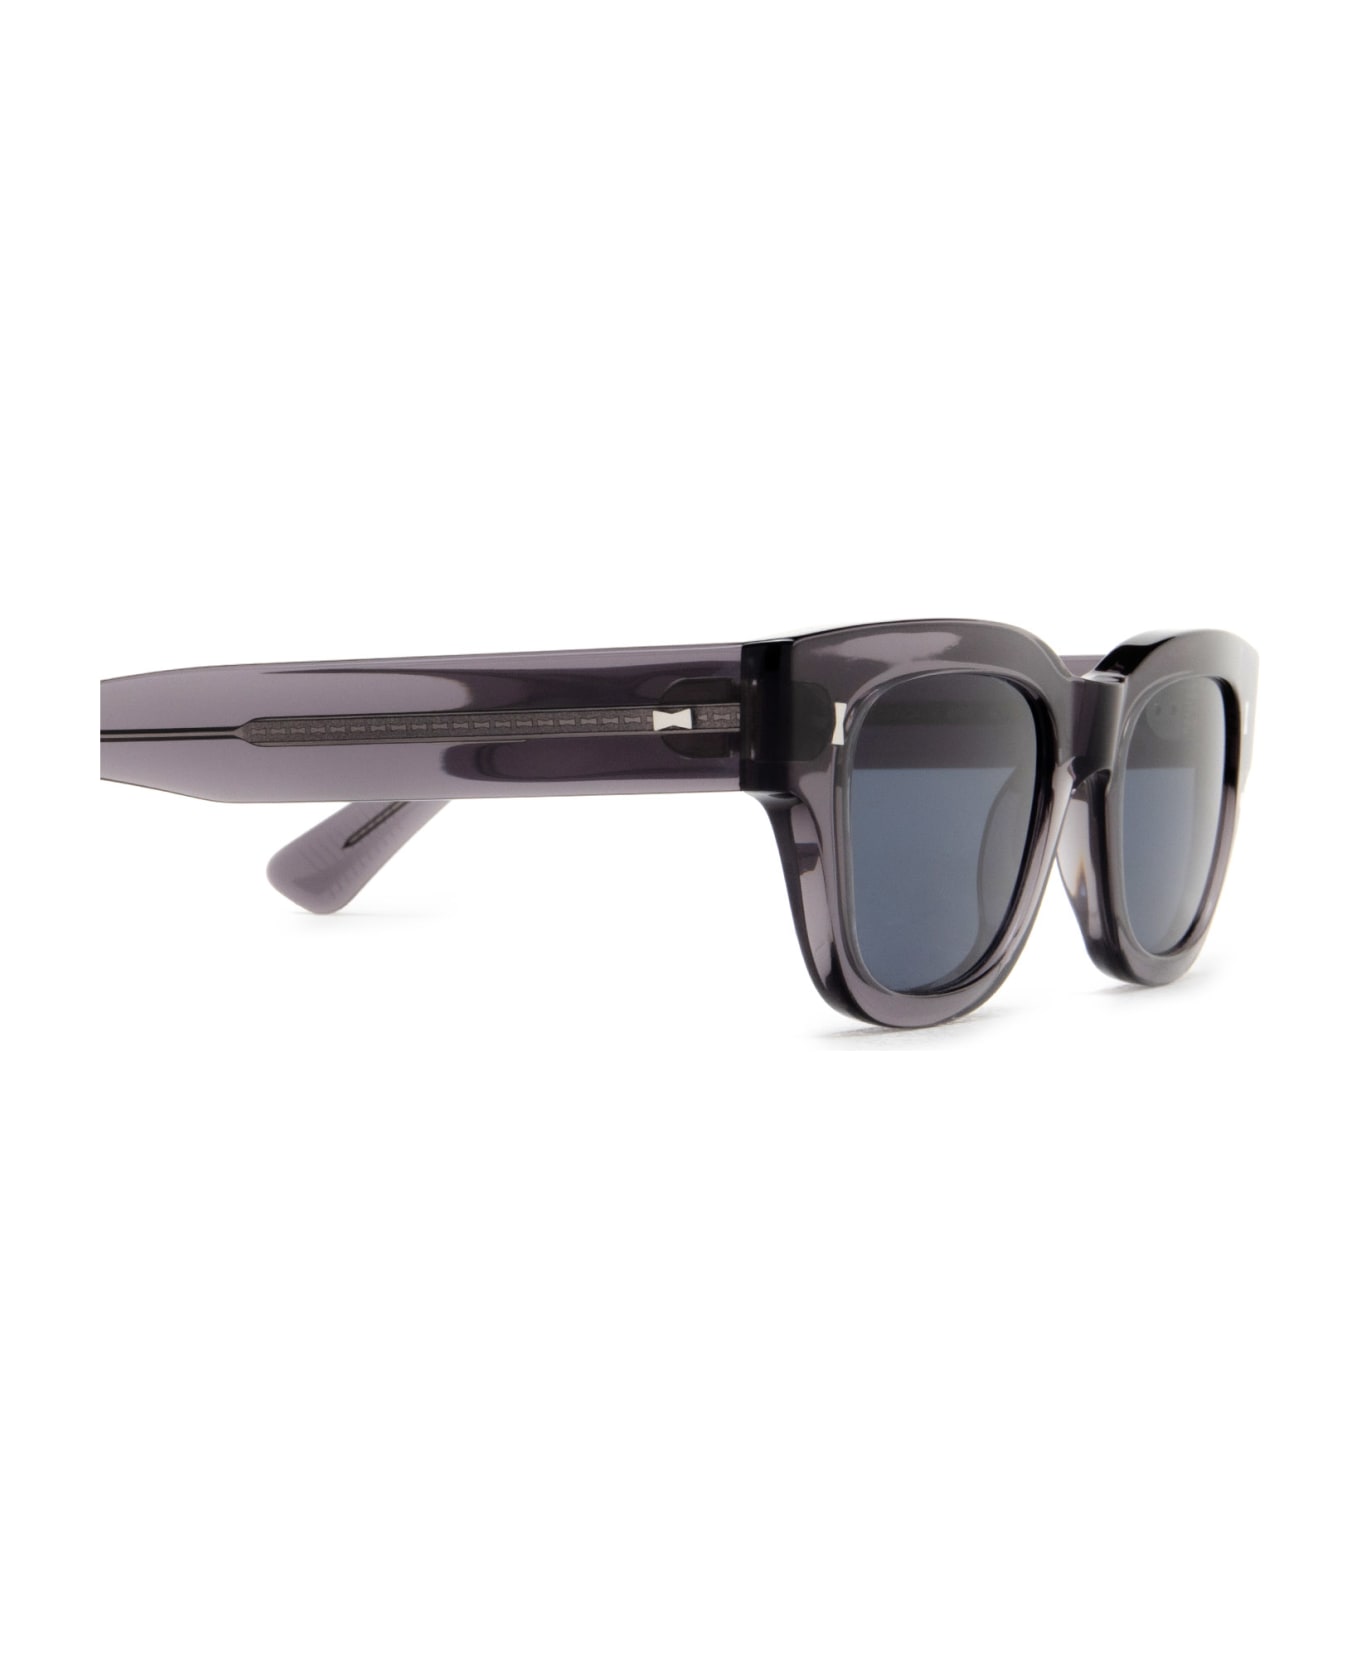 Cubitts Frederick Sun Smoke Grey Sunglasses - Smoke Grey